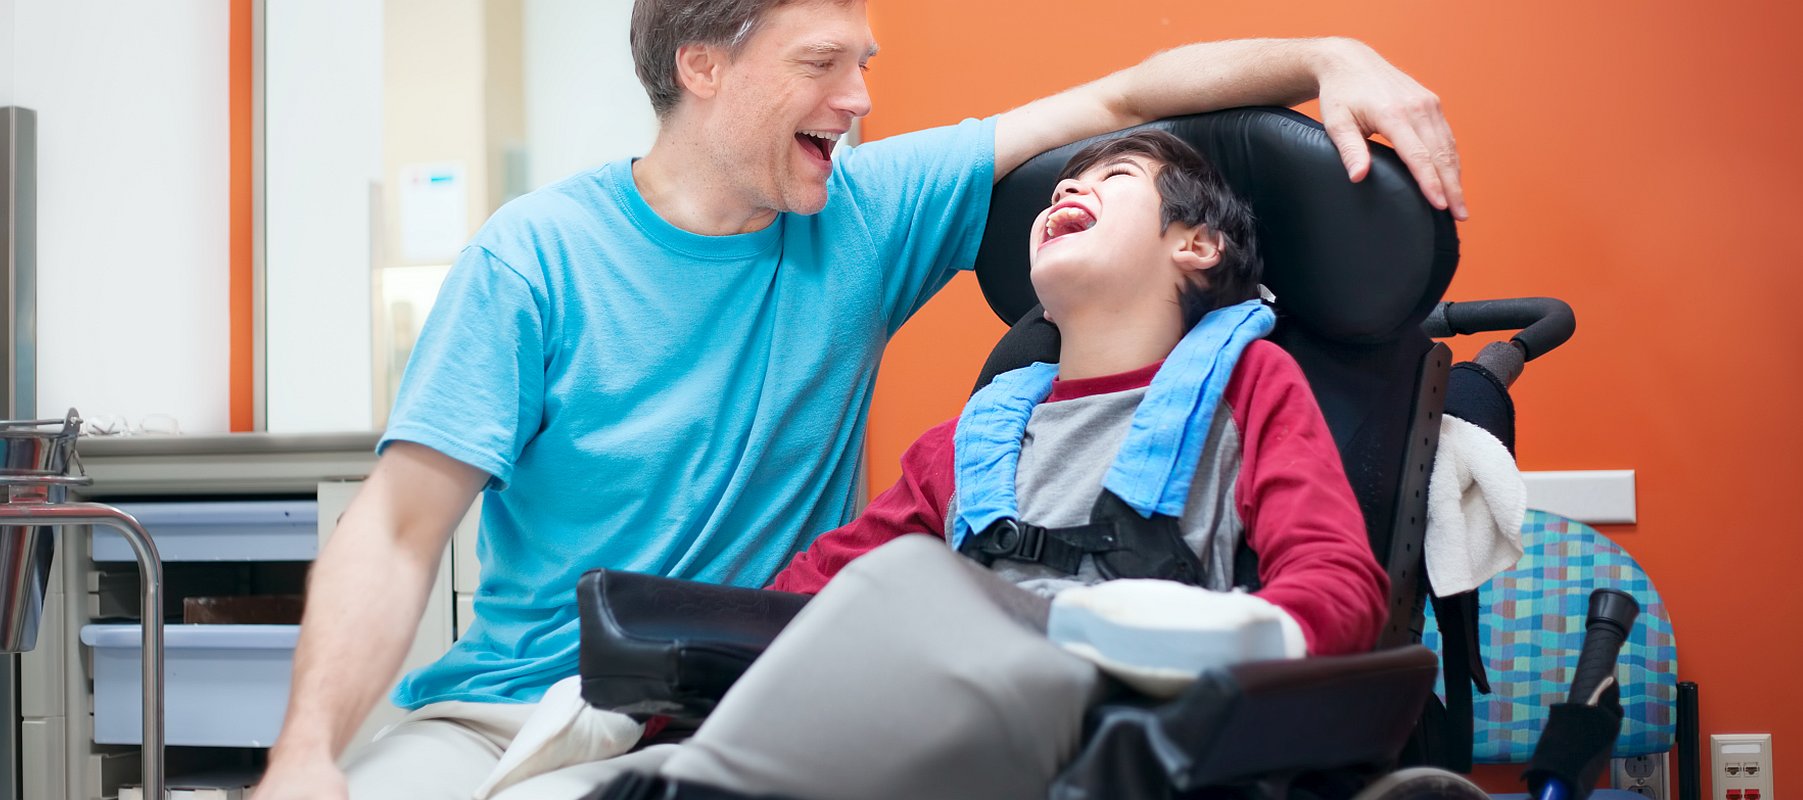 Ein Vater spricht und lacht mit seinem Kind. Der Sohn sitzt im Rollstuhl und lacht.